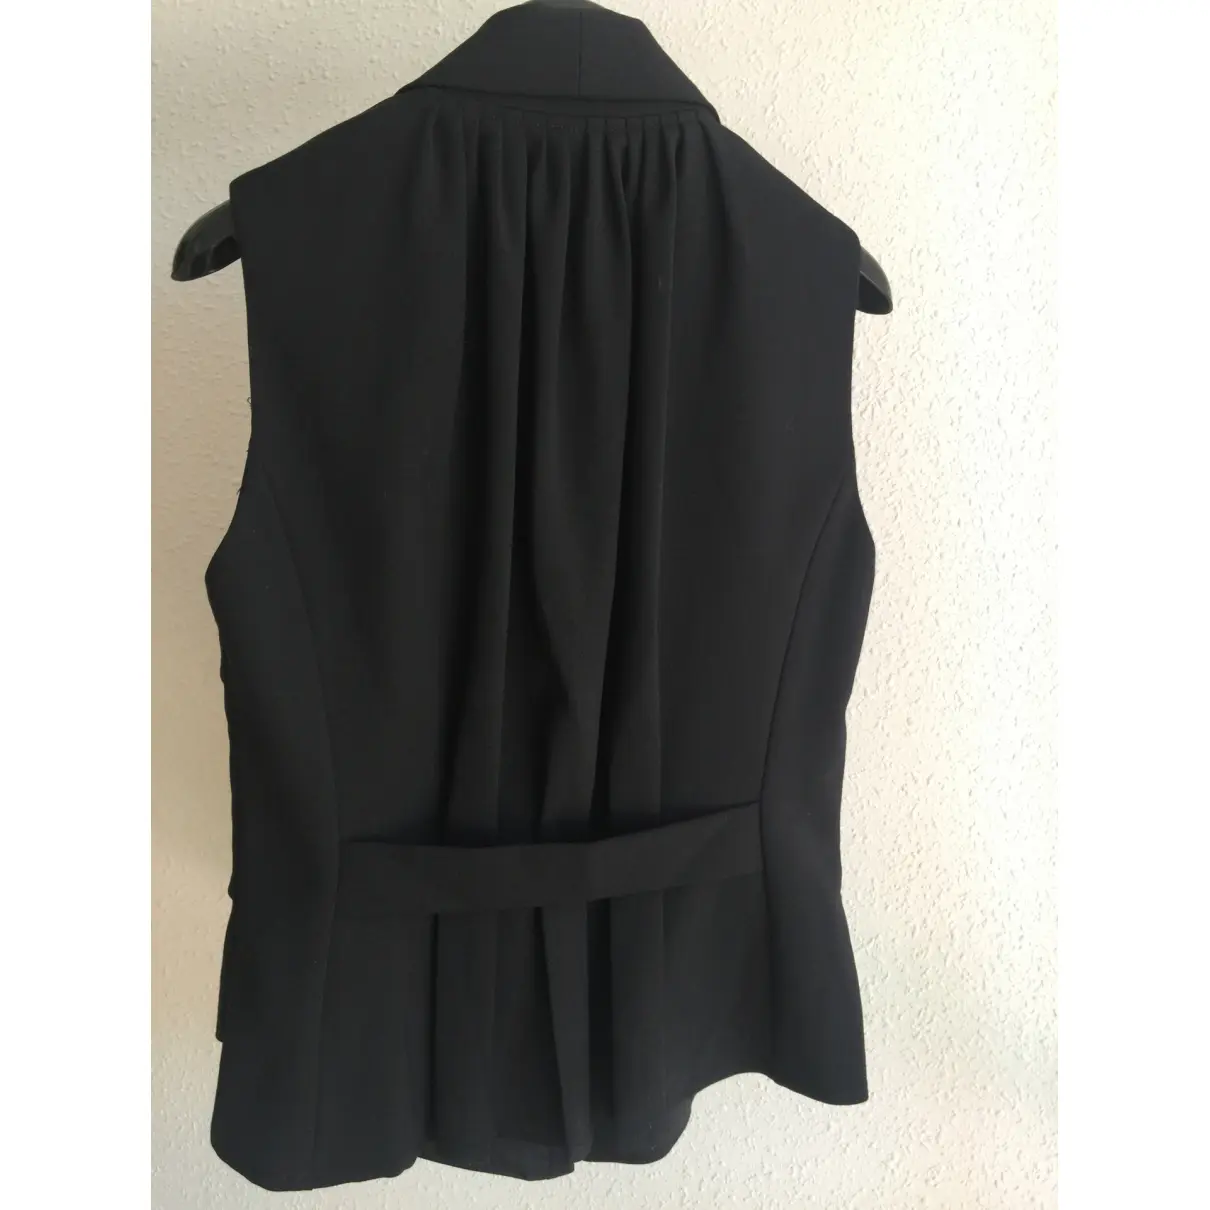 Buy Anna Molinari Short vest online